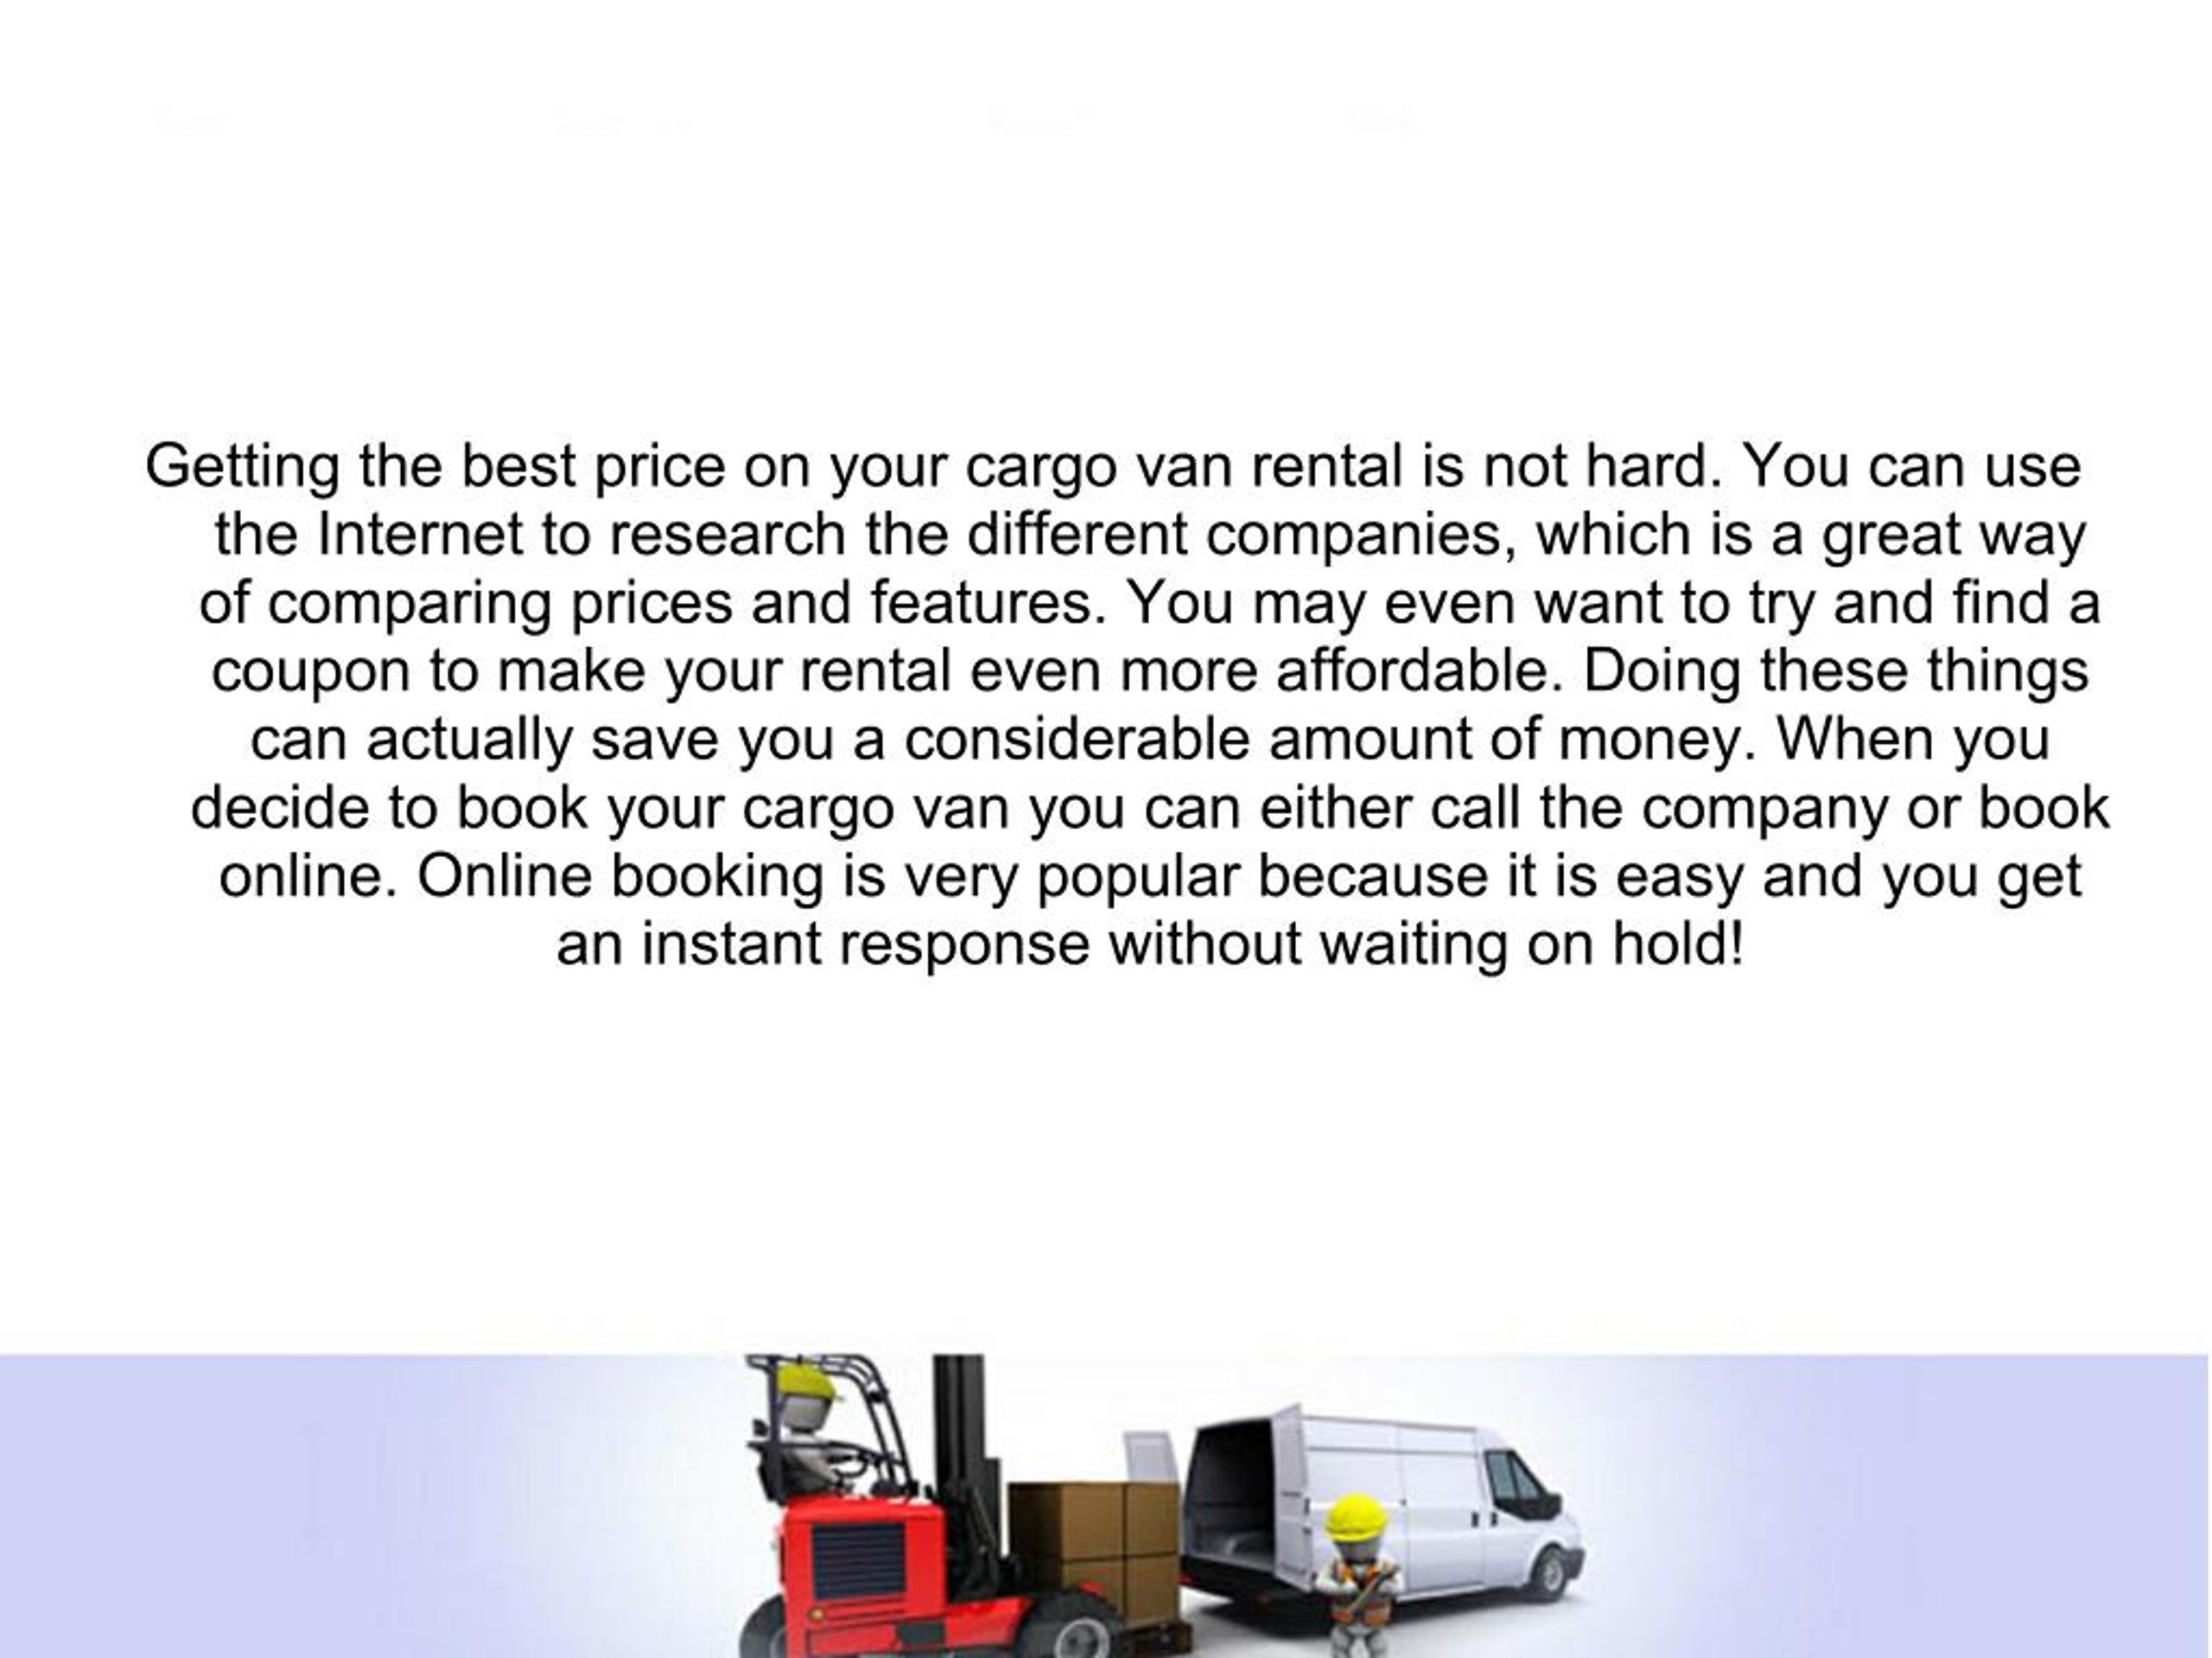 PPT OneWay Cargo Van Rentals PowerPoint Presentation, free download